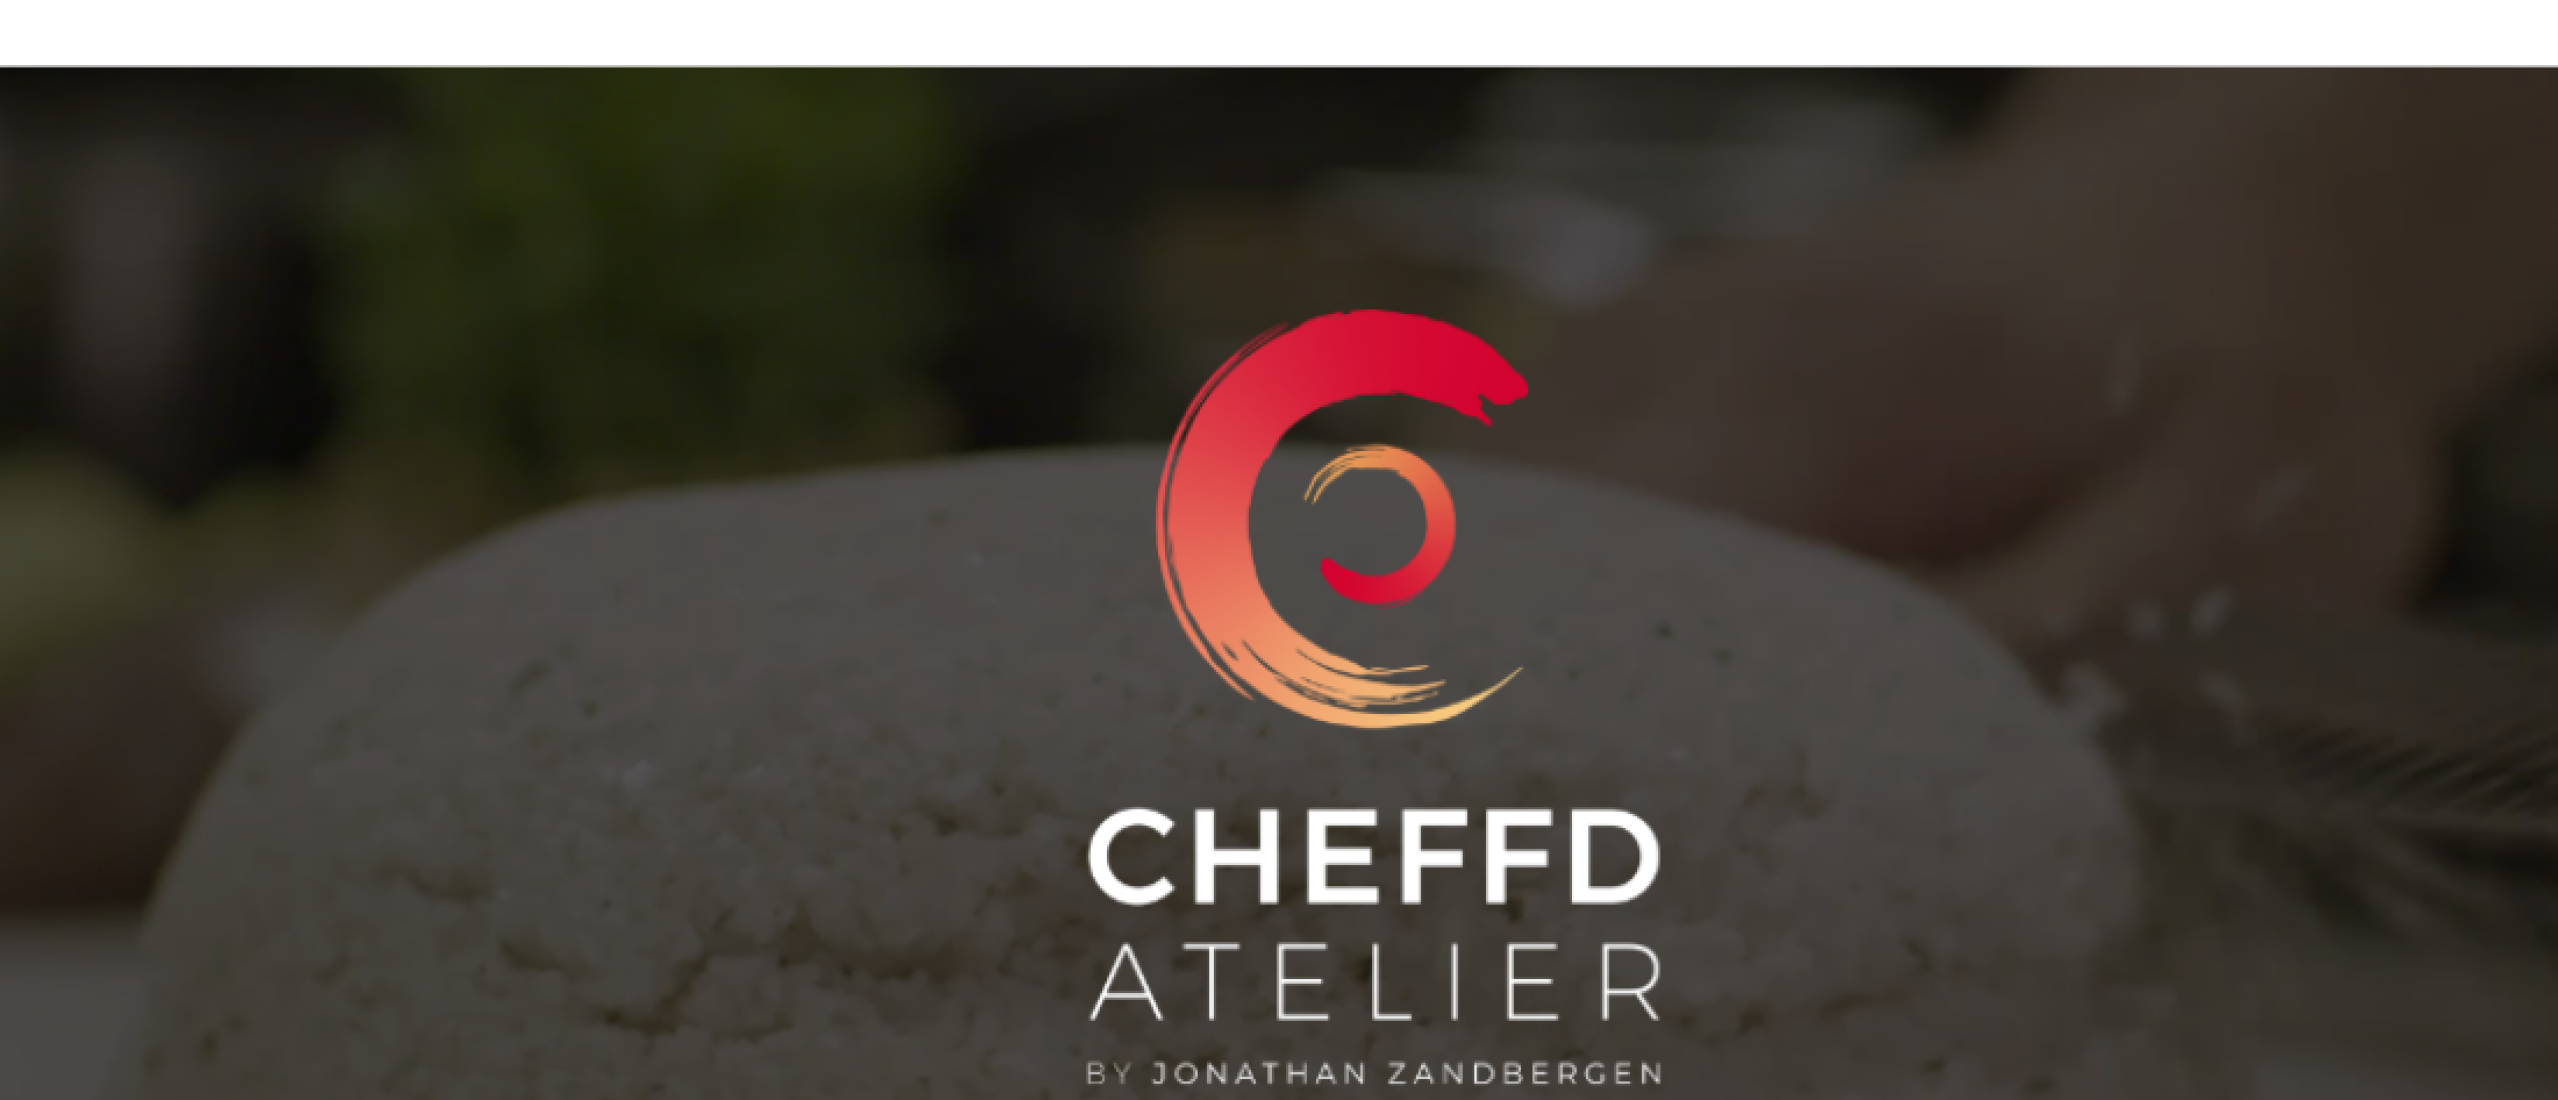 CHEFFD Atelier - nieuw concept van top chef Jonathan Zandbergen & Restaurant Merlet*